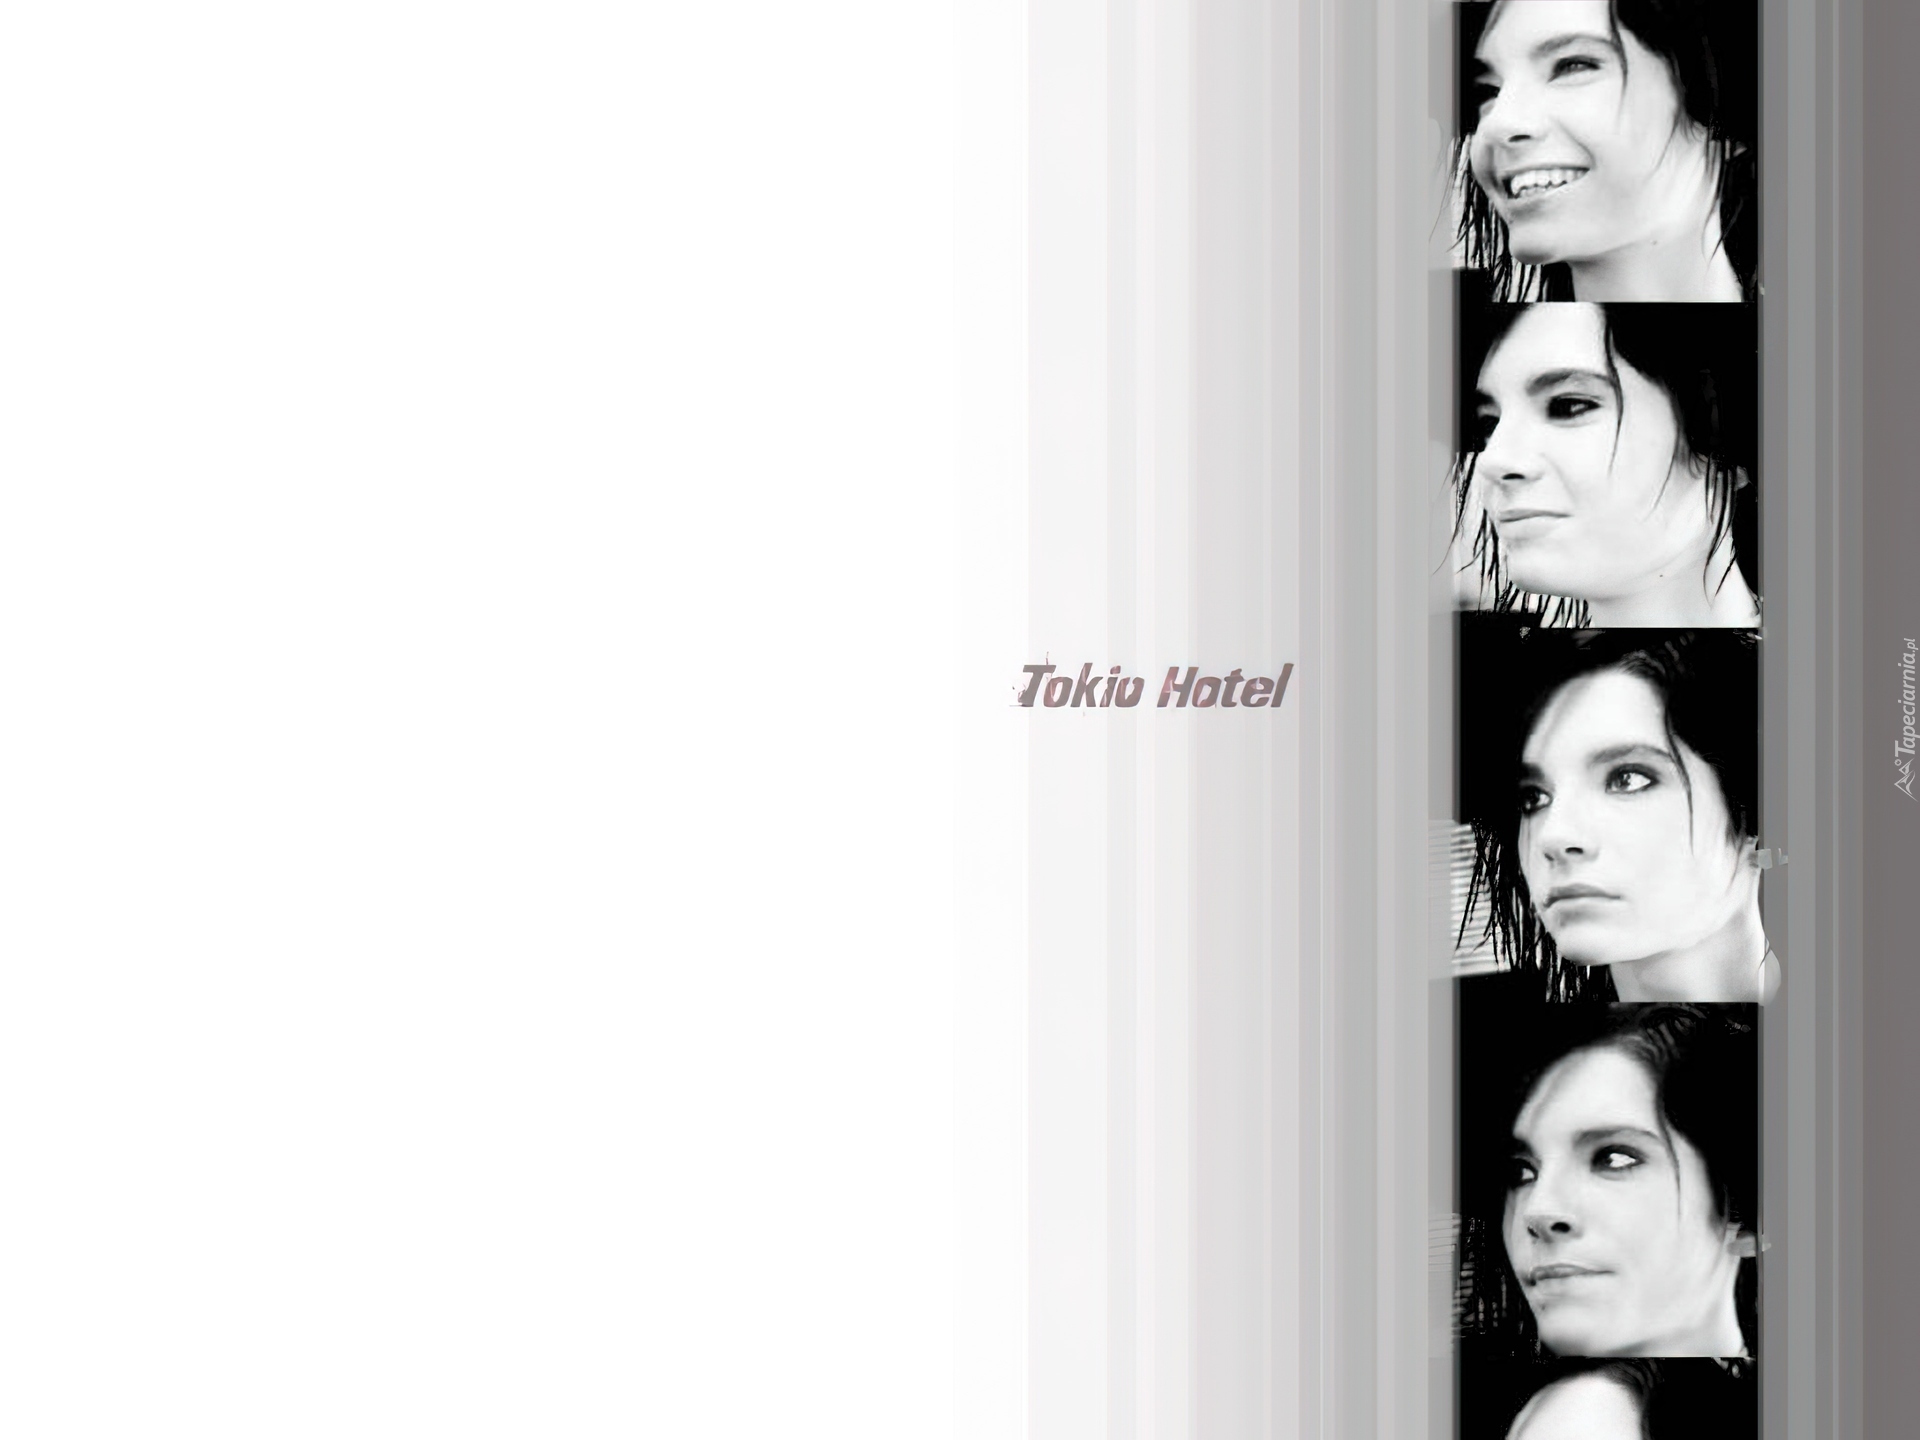 Tokio Hotel, Kobieta,wokalistka, twarz